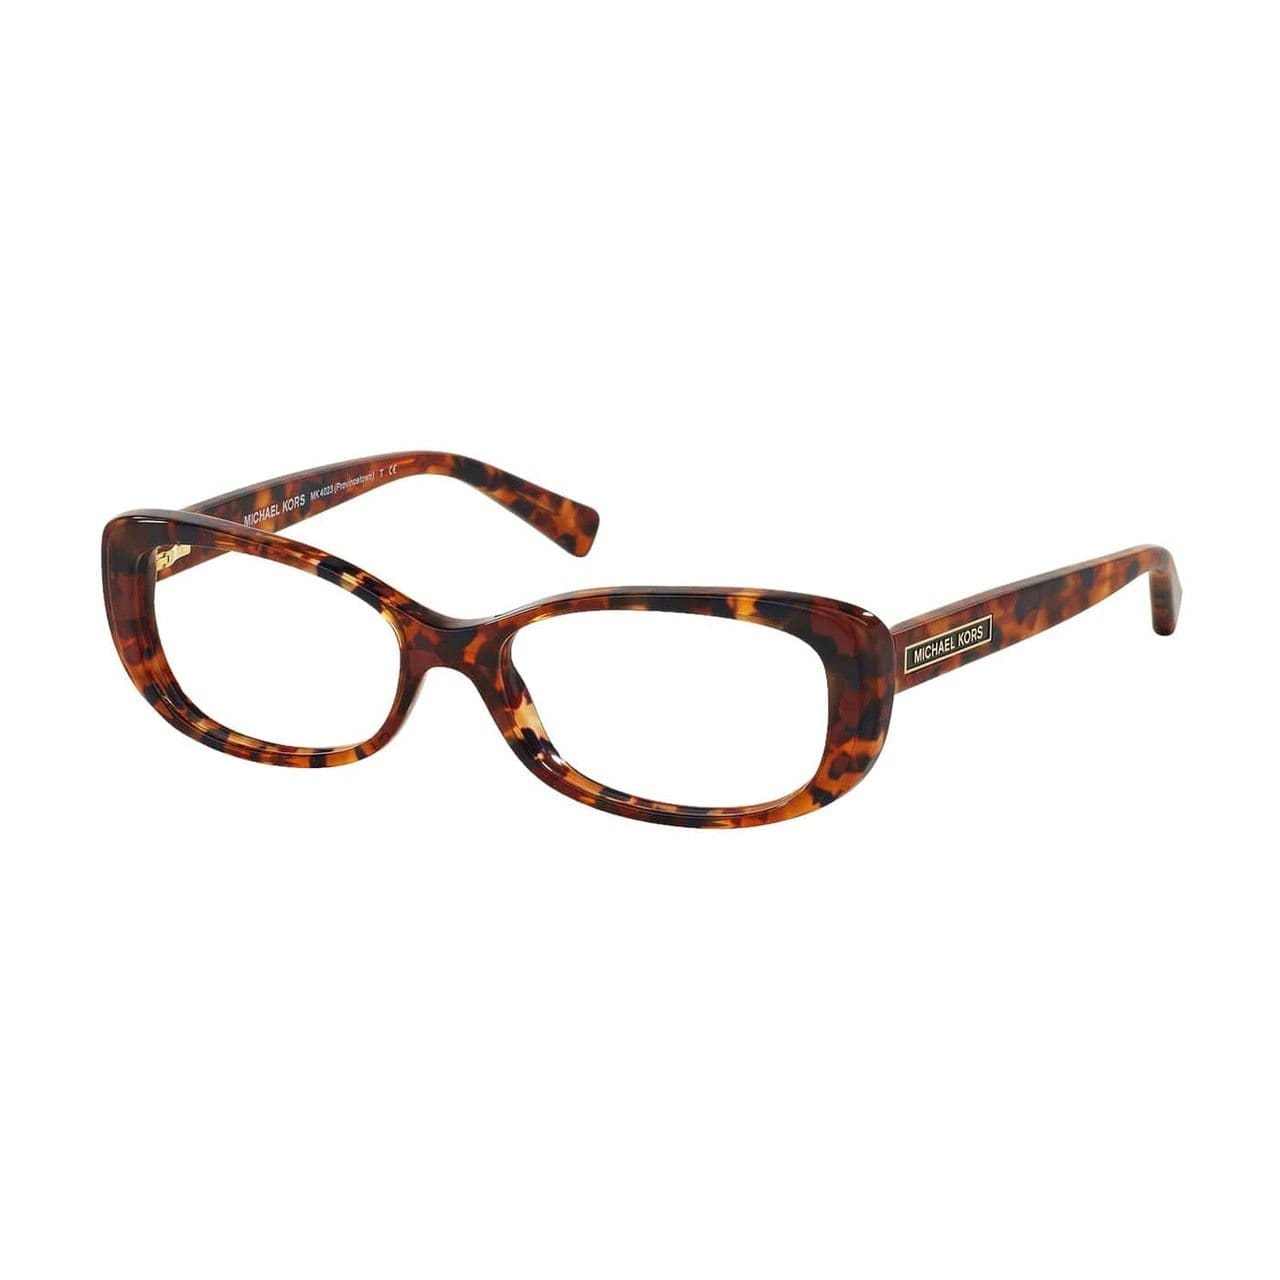 Michael Kors MK 4023-3067 Provincetown Burgundy Tortoise Rectangular Women's Eyeglasses